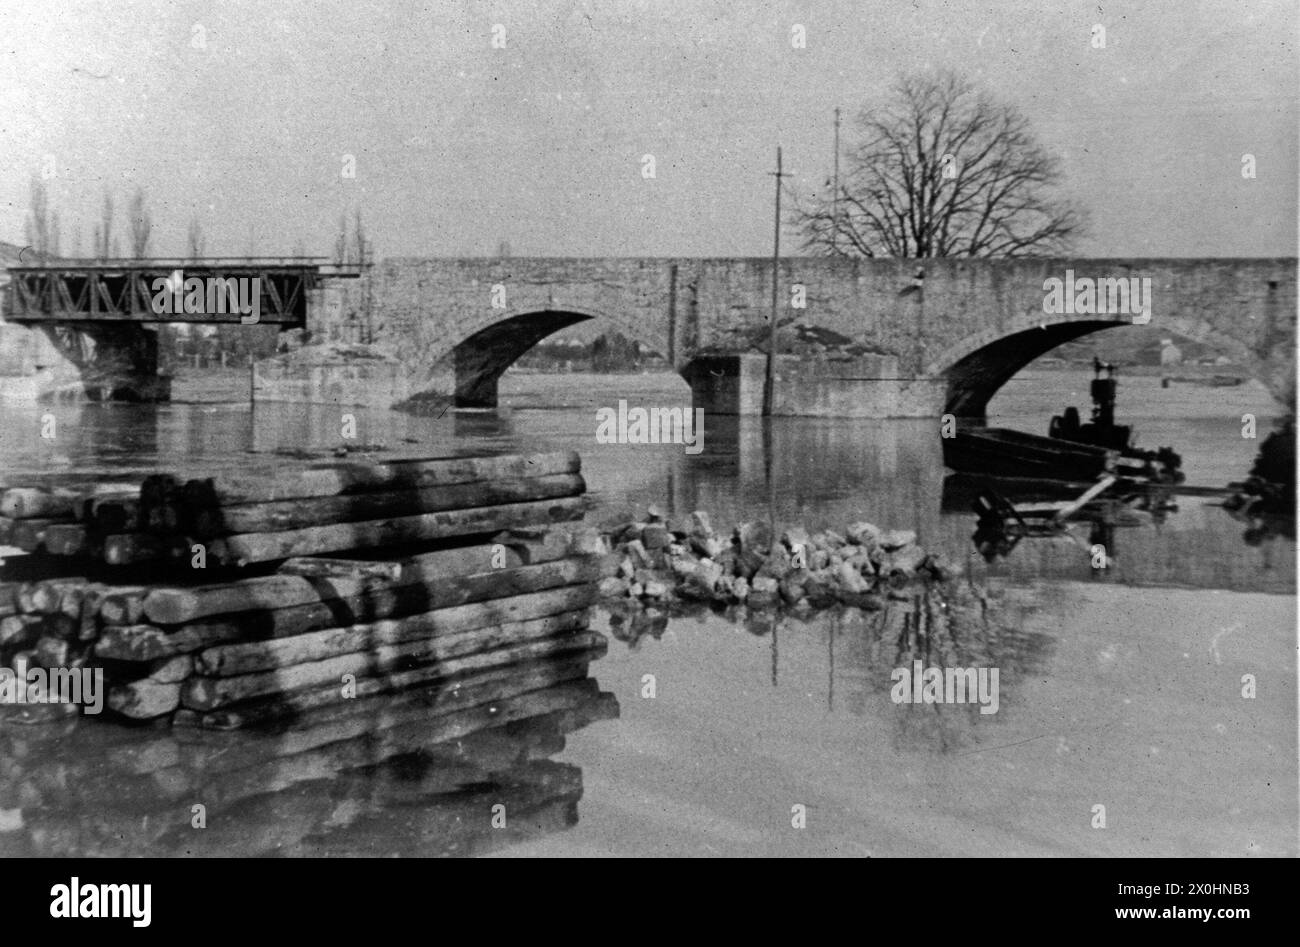 Deutsche Einheiten sprengten den Bogen sechs in der Mitte der Brücke, vor den herannahenden Amerikanern. In den folgenden Jahren überspannte eine provisorische Holzkonstruktion die Lücke in der Struktur [automatisierte Übersetzung] Stockfoto